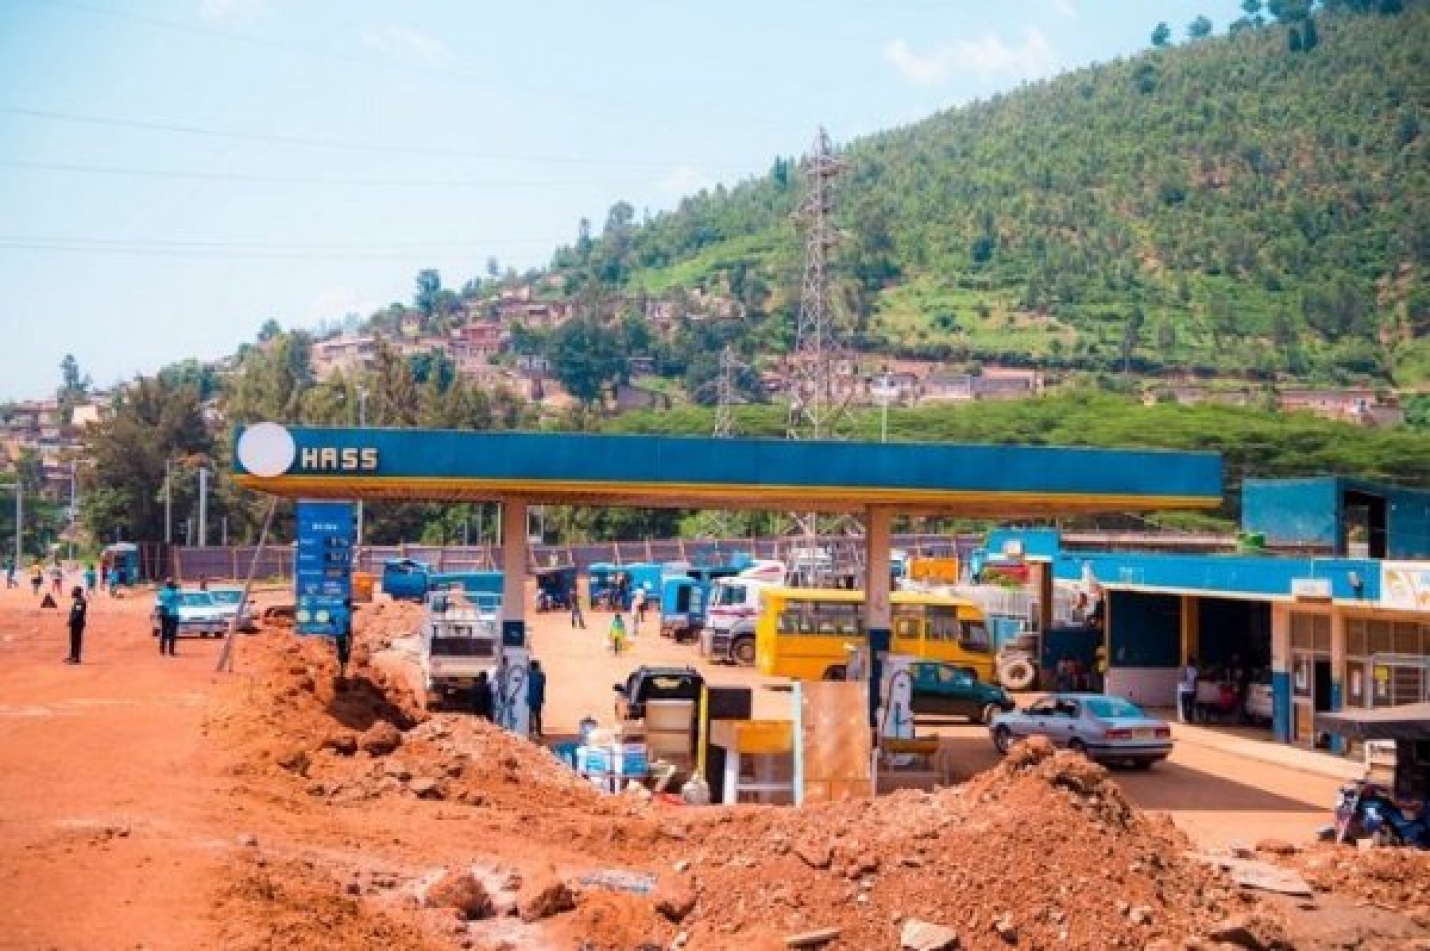 Une femme d’affaires de Kigali reçoit le dernier avertissement pour démolir ses propriétés d’une zone humide